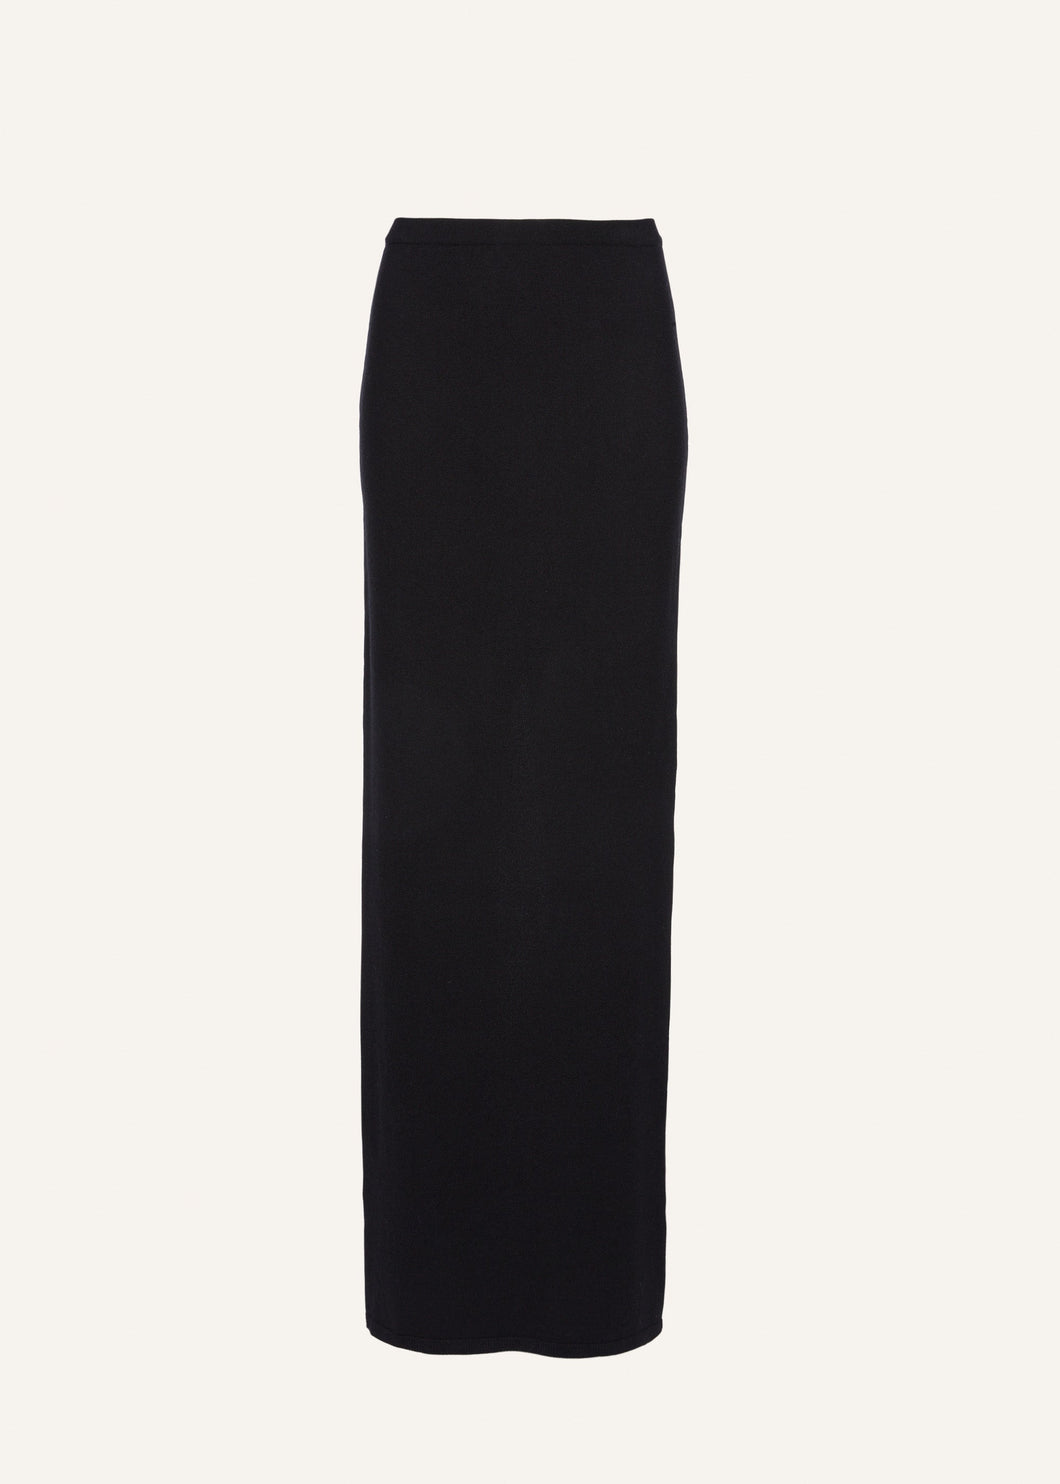 Knitwear maxi skirt in black